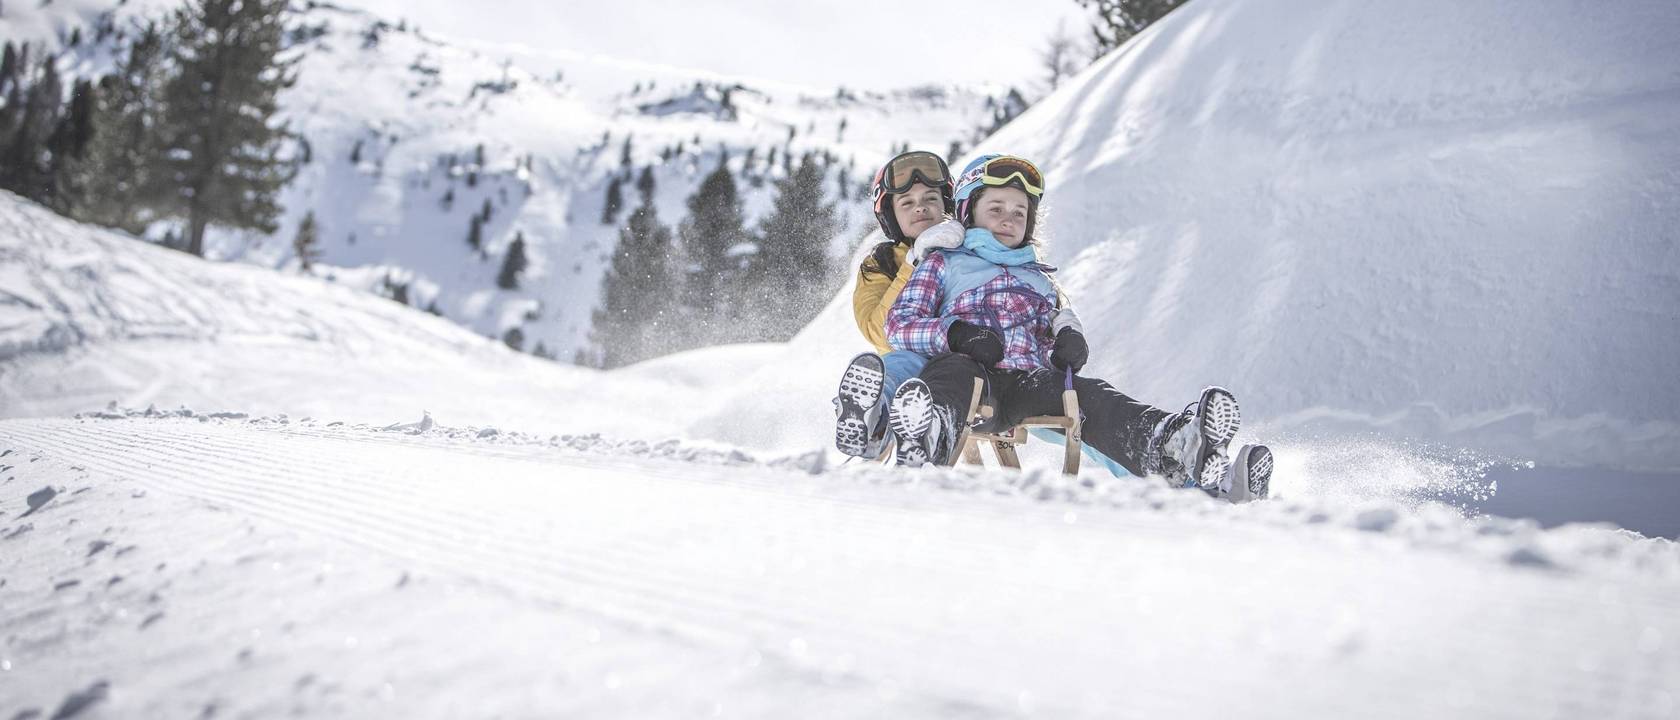 Winterurlaub mit Kindern: ein abwechslungsreiches Vergnügen